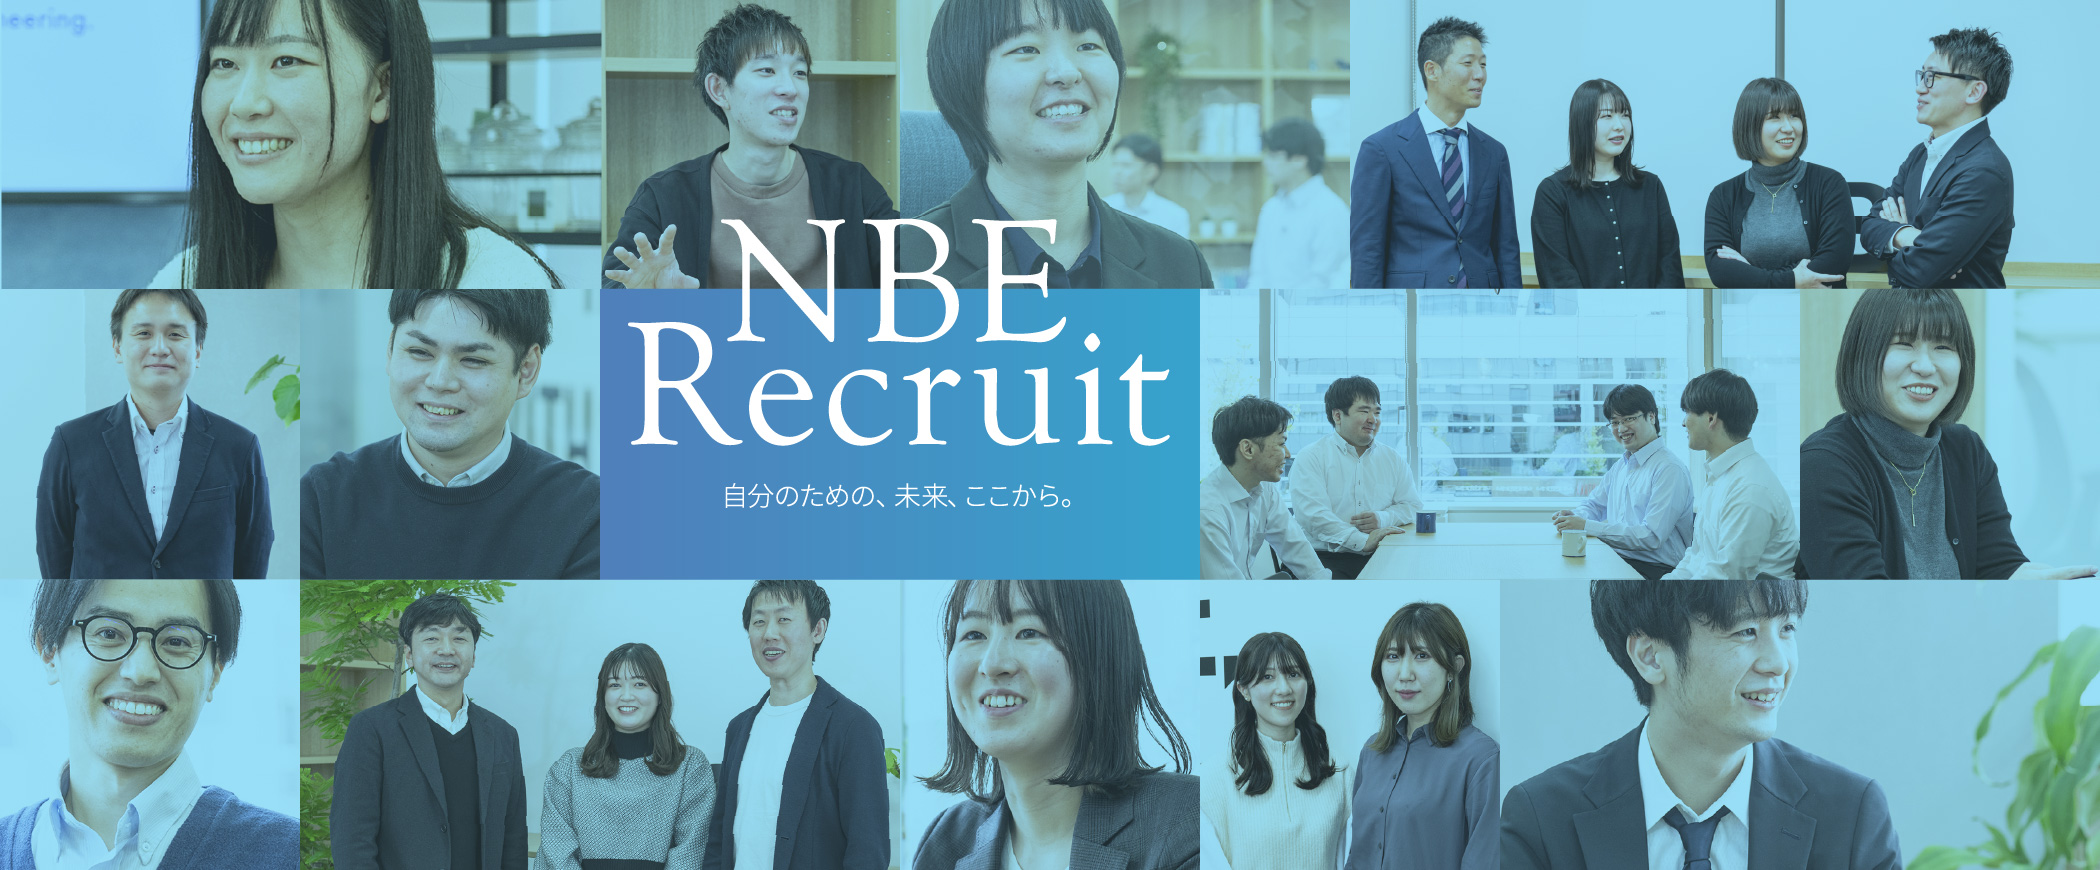 NBE Recruit 自分のための、未来、ここから。